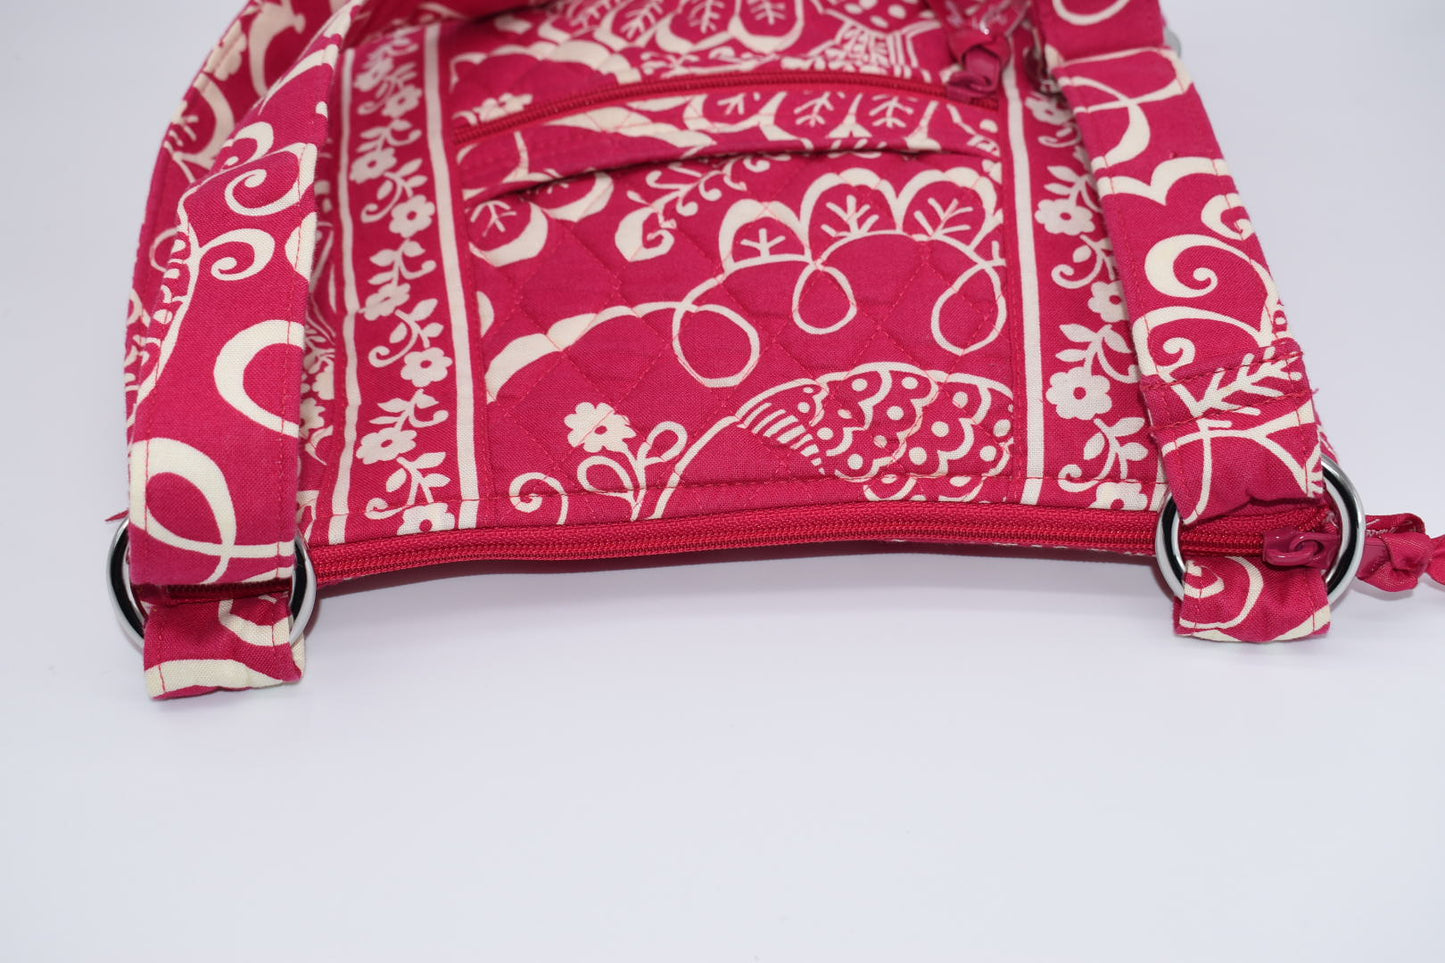 Vera Bradley Hipster Crossbody Bag in "Twirly Birds-Pink" Pattern